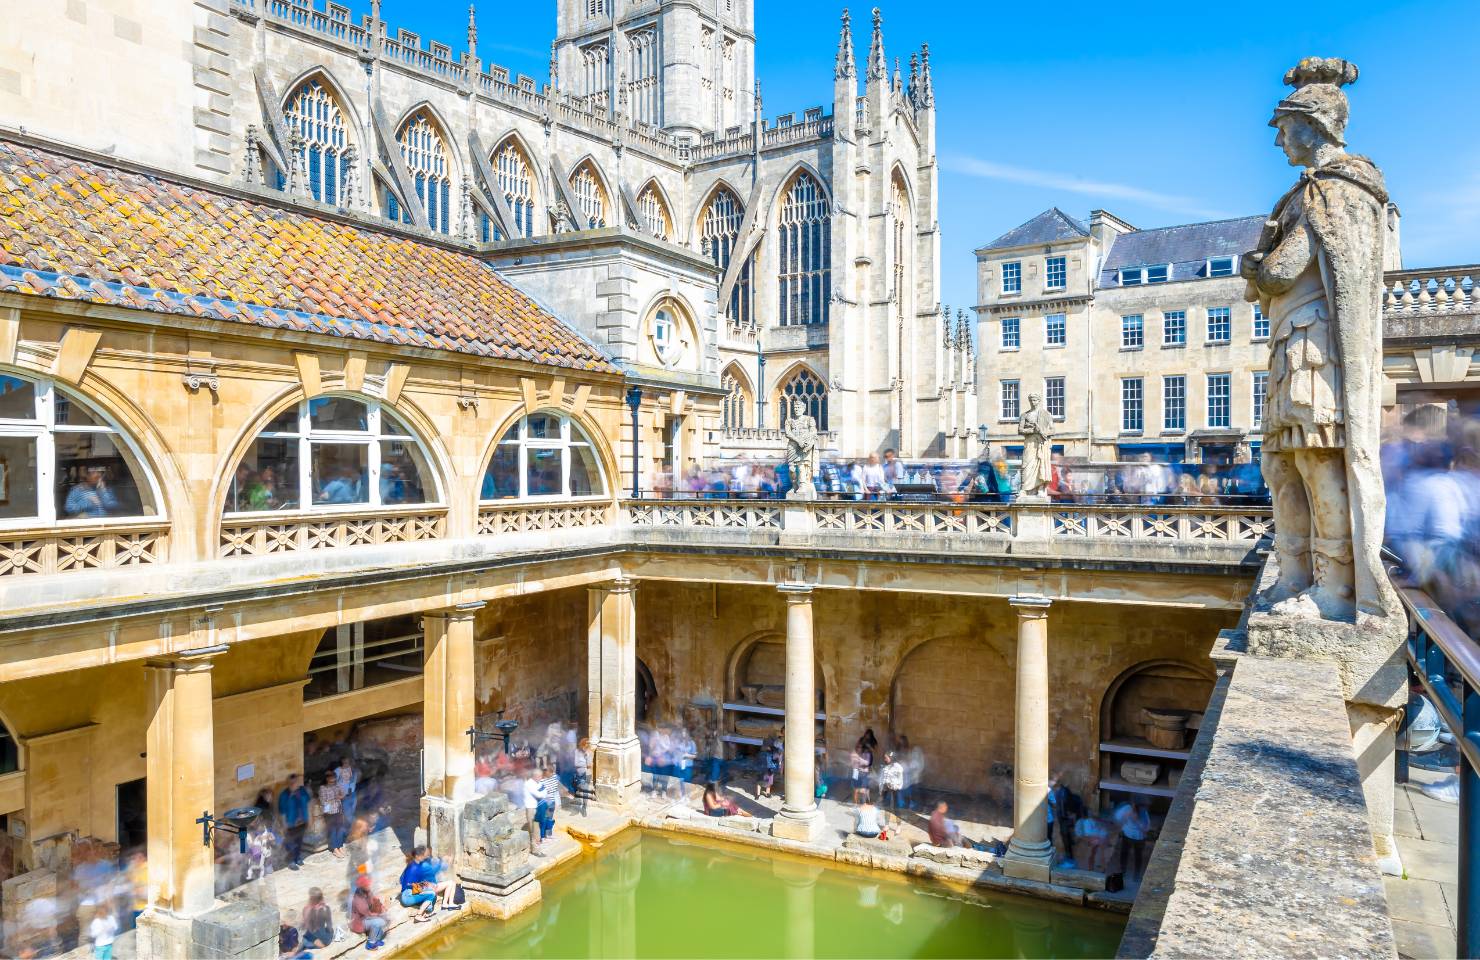 Roman Bath in Bath England